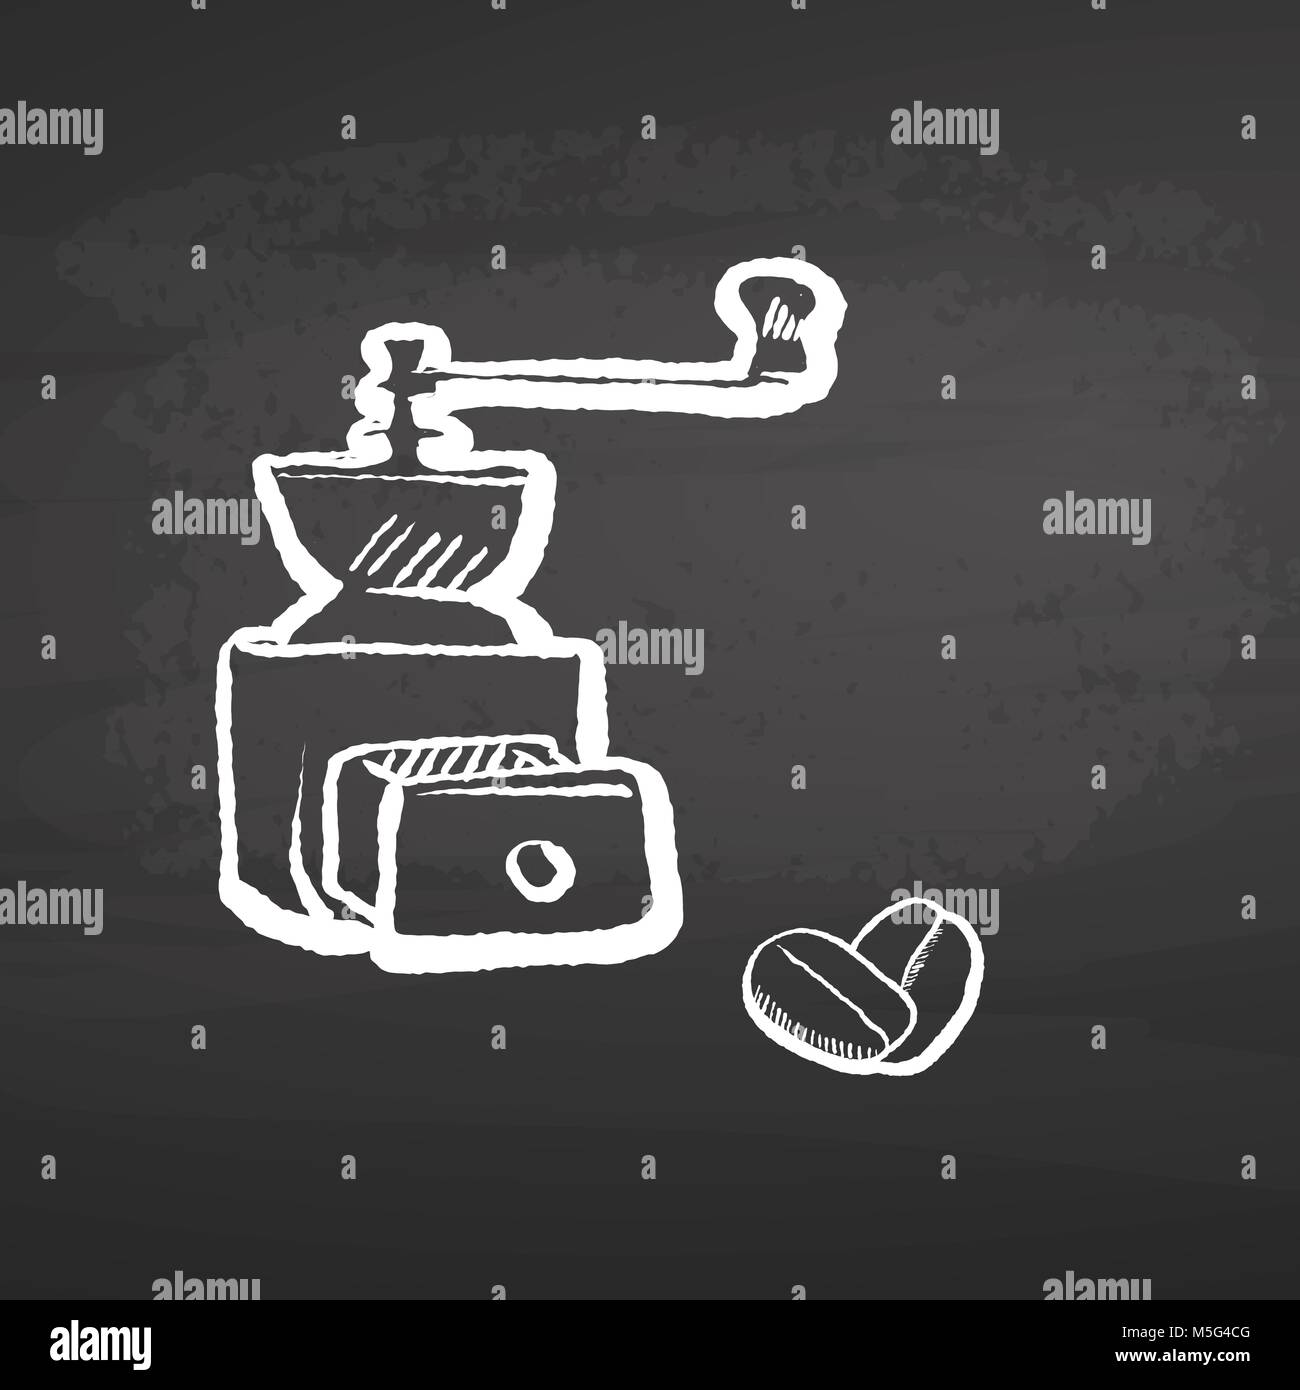 Kaffeemühle Schwarzes Brett Skizze. Konzept Vektorgrafiken mit kopieren. Ideal für Lebensmittel Preis Etikettierung und Poster Layouts. Stock Vektor